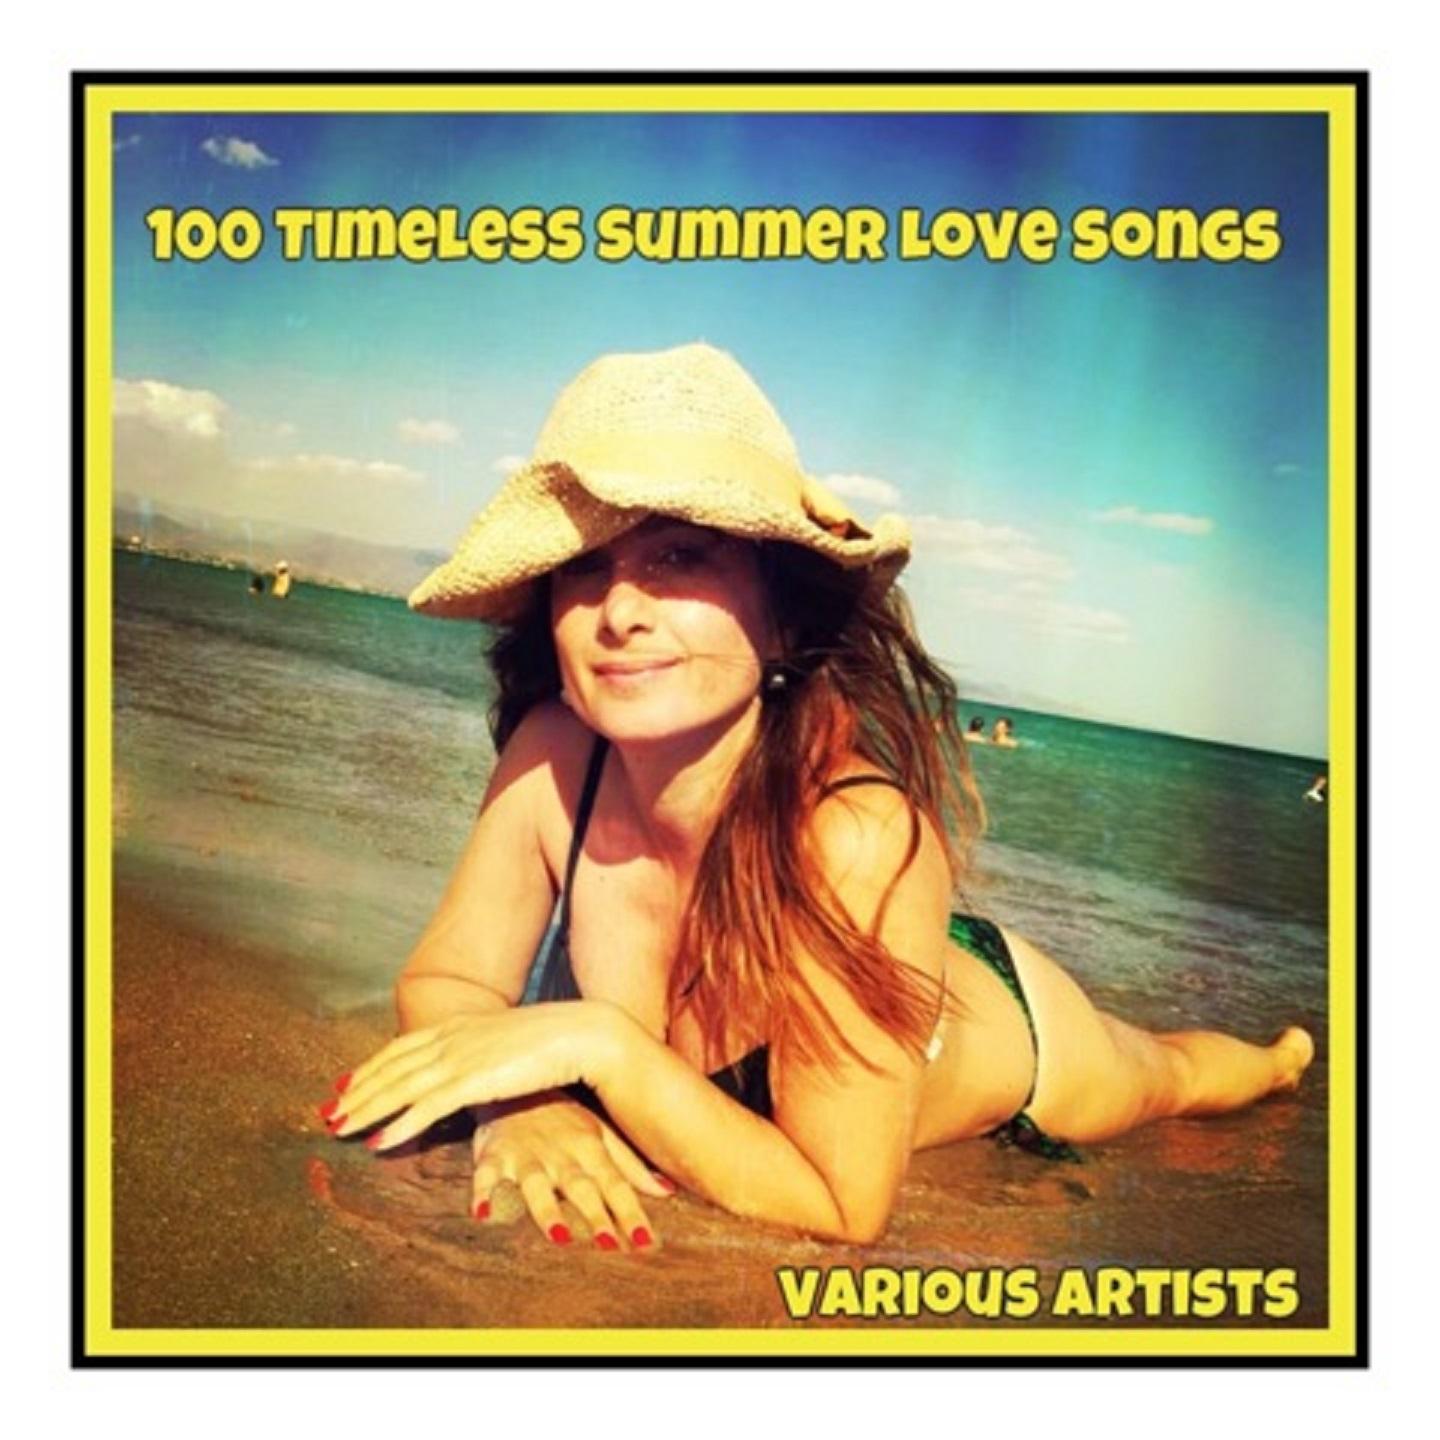 100 Timeless Summer Love Songs